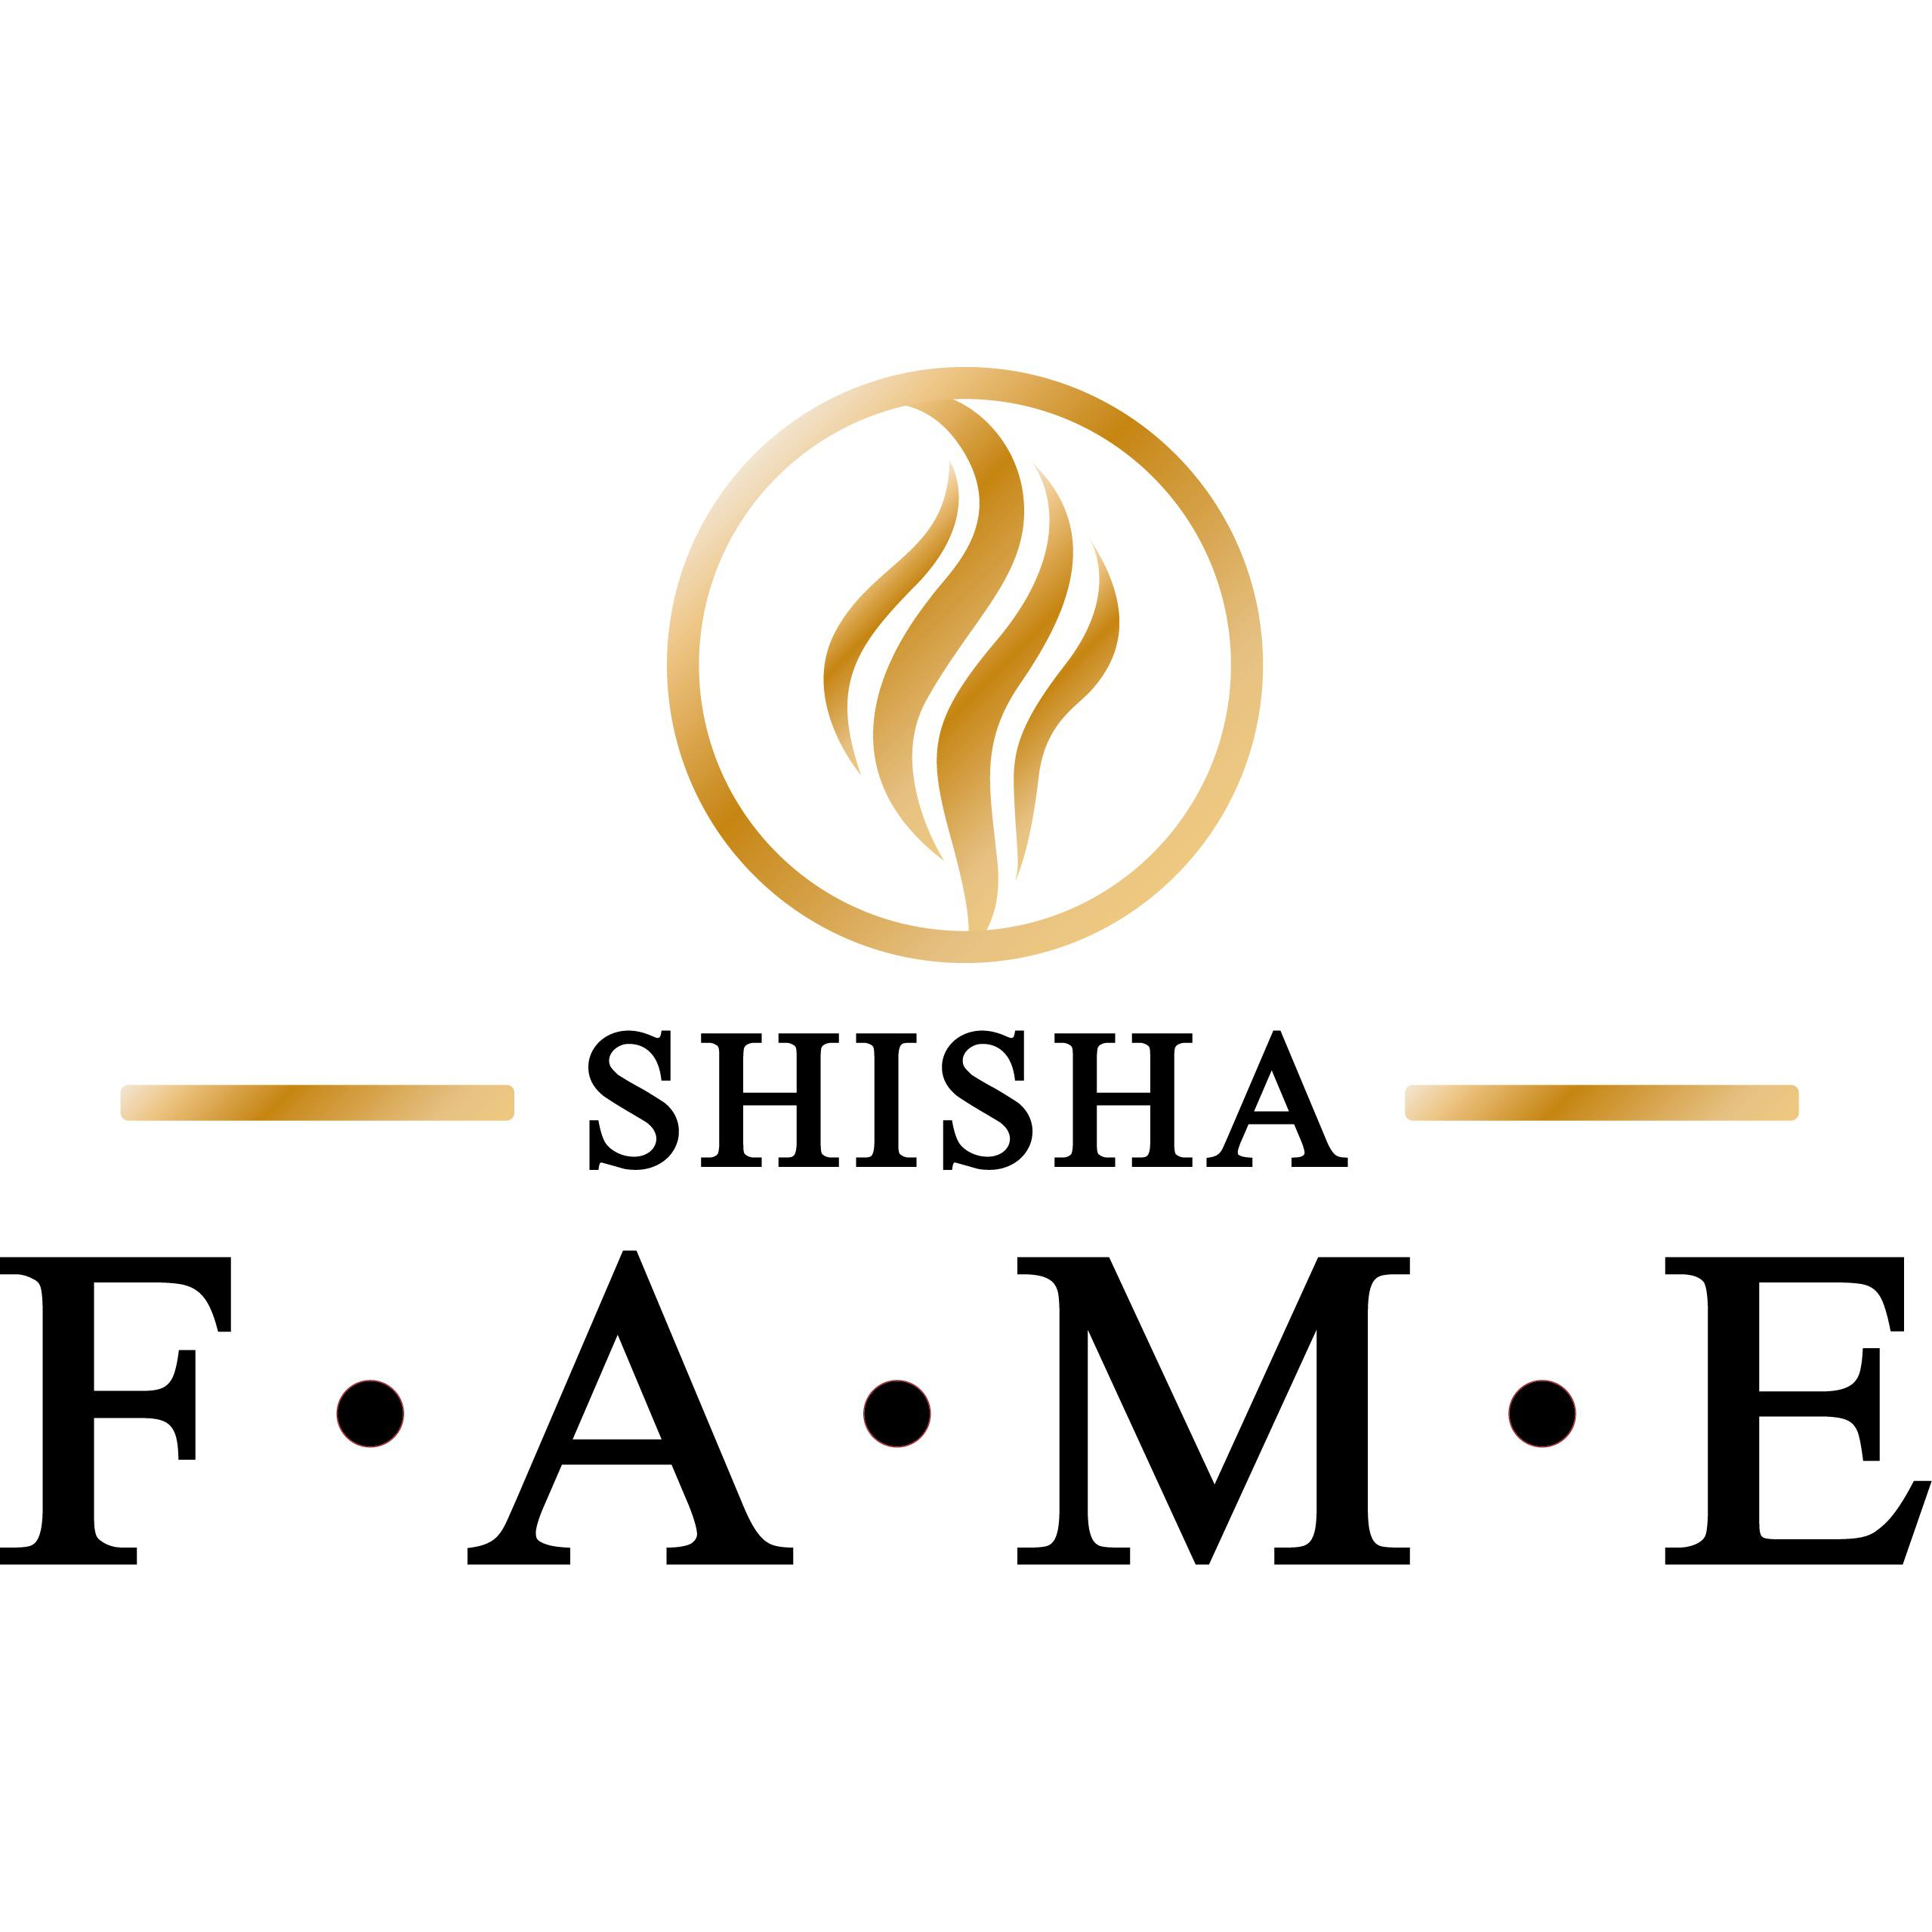 Shisha Fame GmbH in Aachen